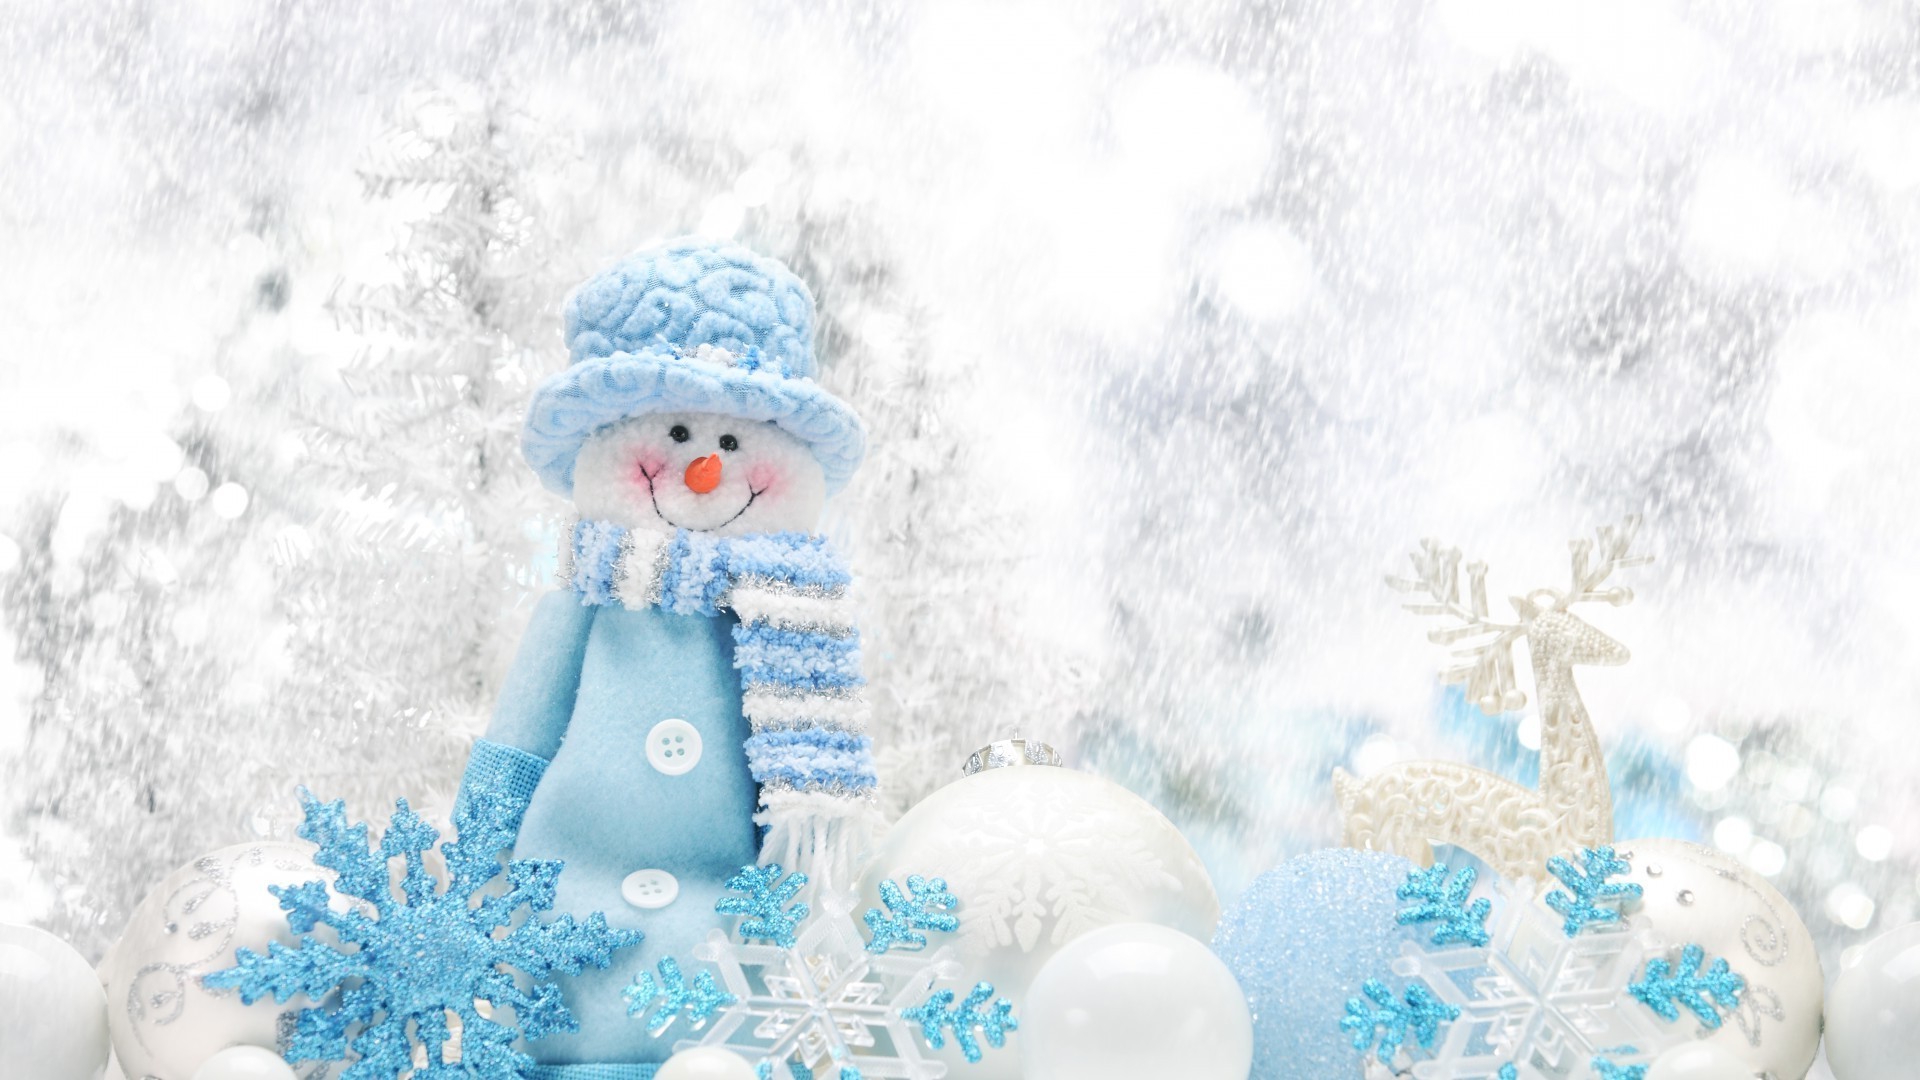 новый год зима рождество снег снежинка мороз холодная мерри сезон снеговик праздник лед замороженные украшения снег-белый ева приветствие пургу